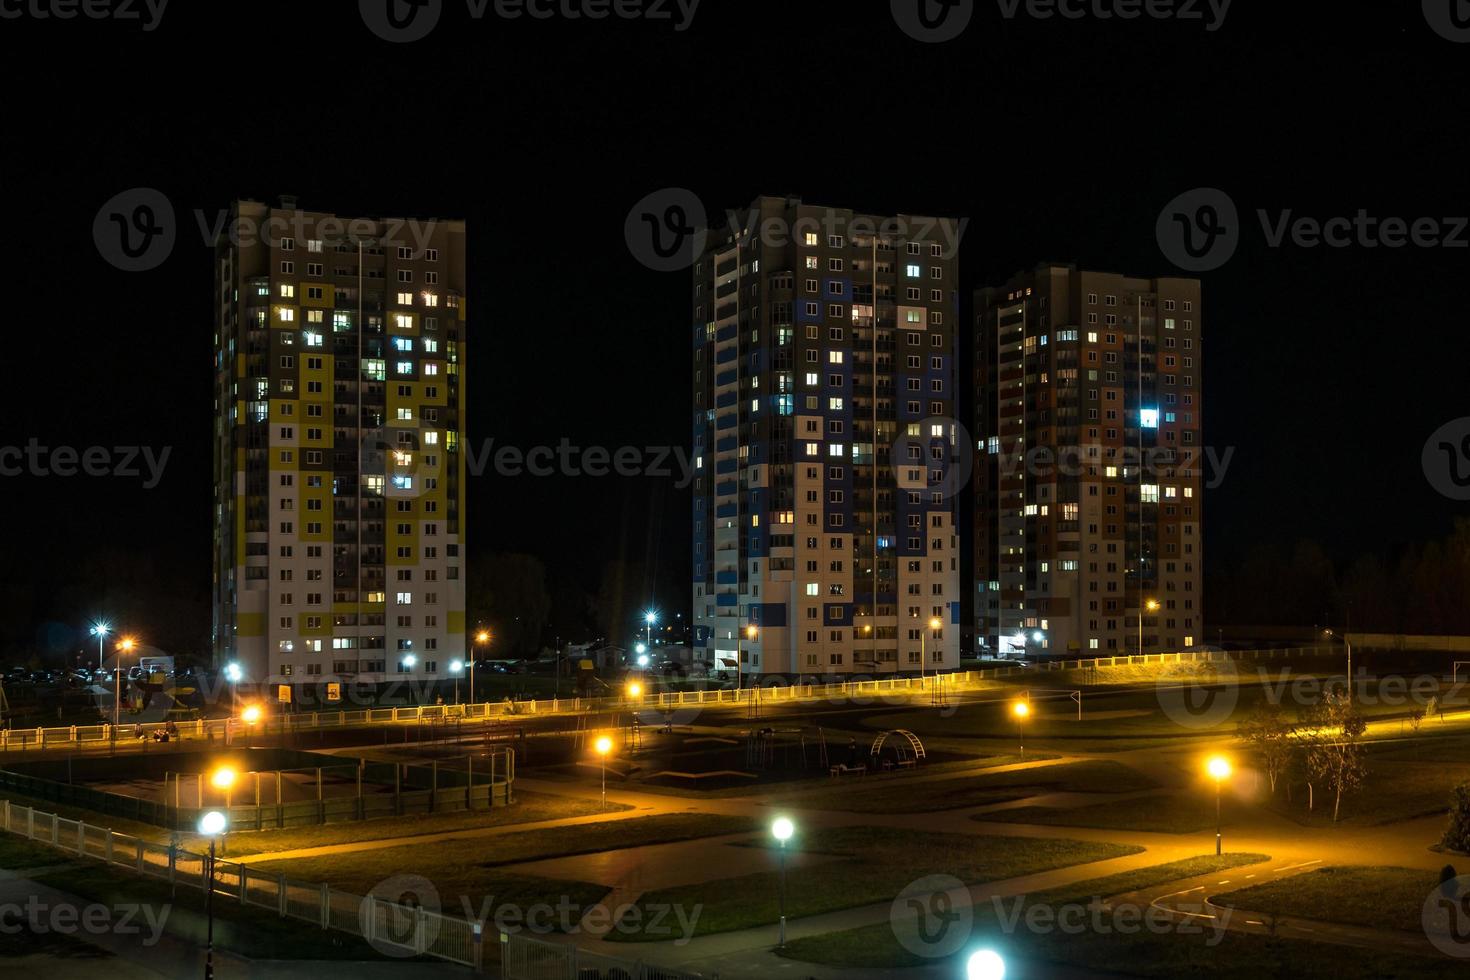 Nachtpanorama des Lichts in den Fenstern eines mehrstöckigen Gebäudes. Leben in einer Großstadt foto